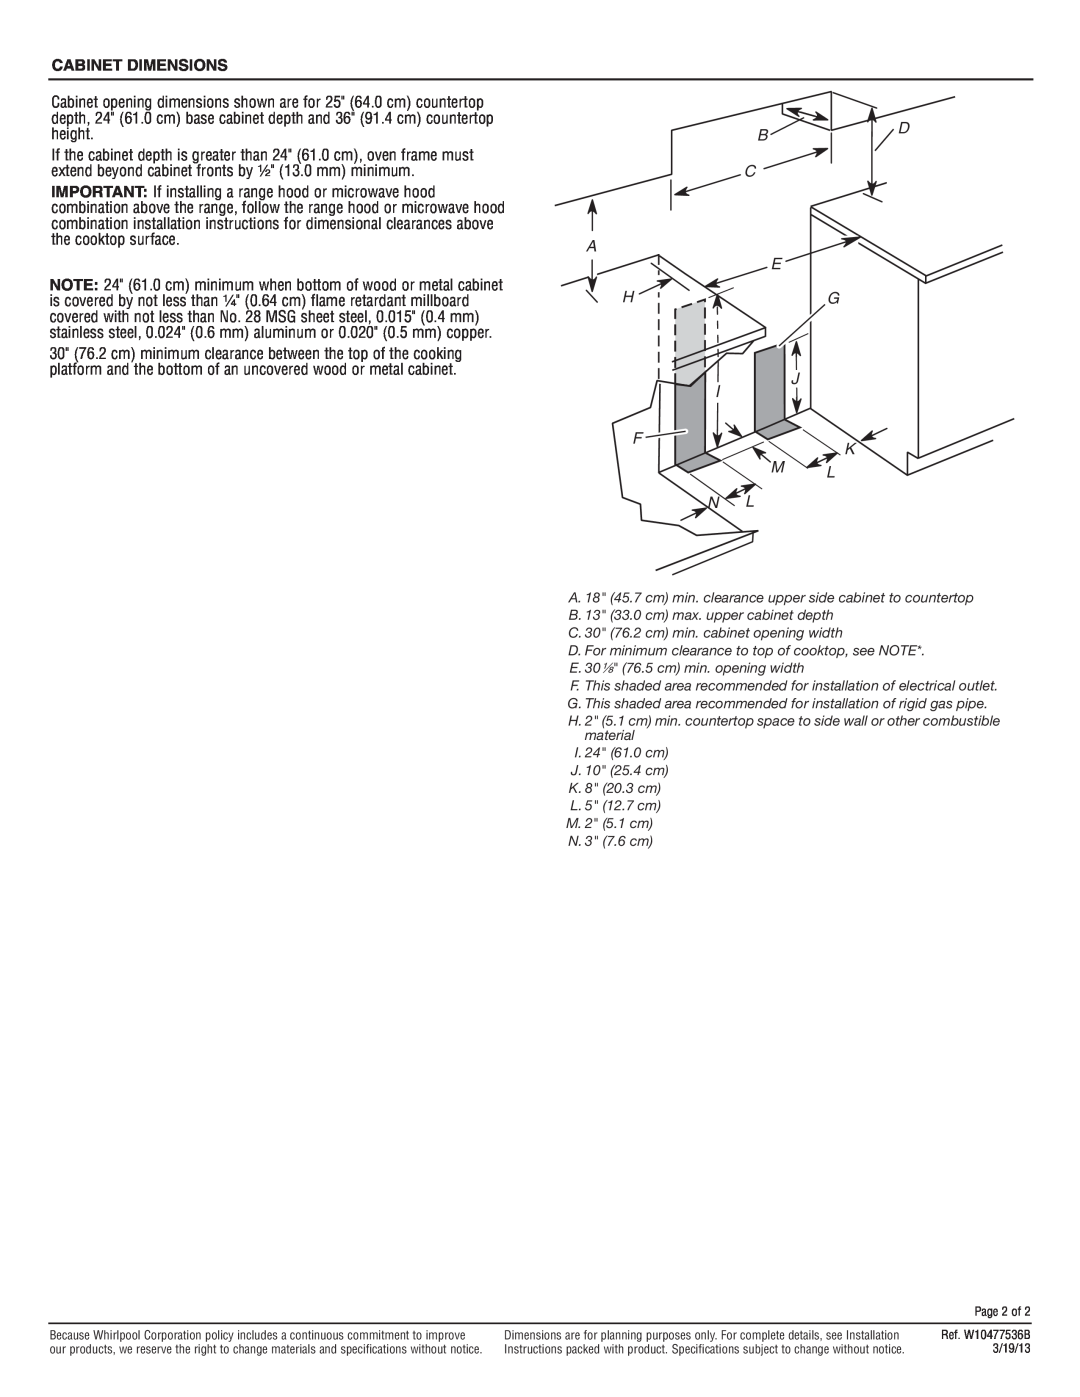 Whirlpool SF216LXS dimensions B D C A E Hg J, F K M L N L, Cabinet Dimensions 